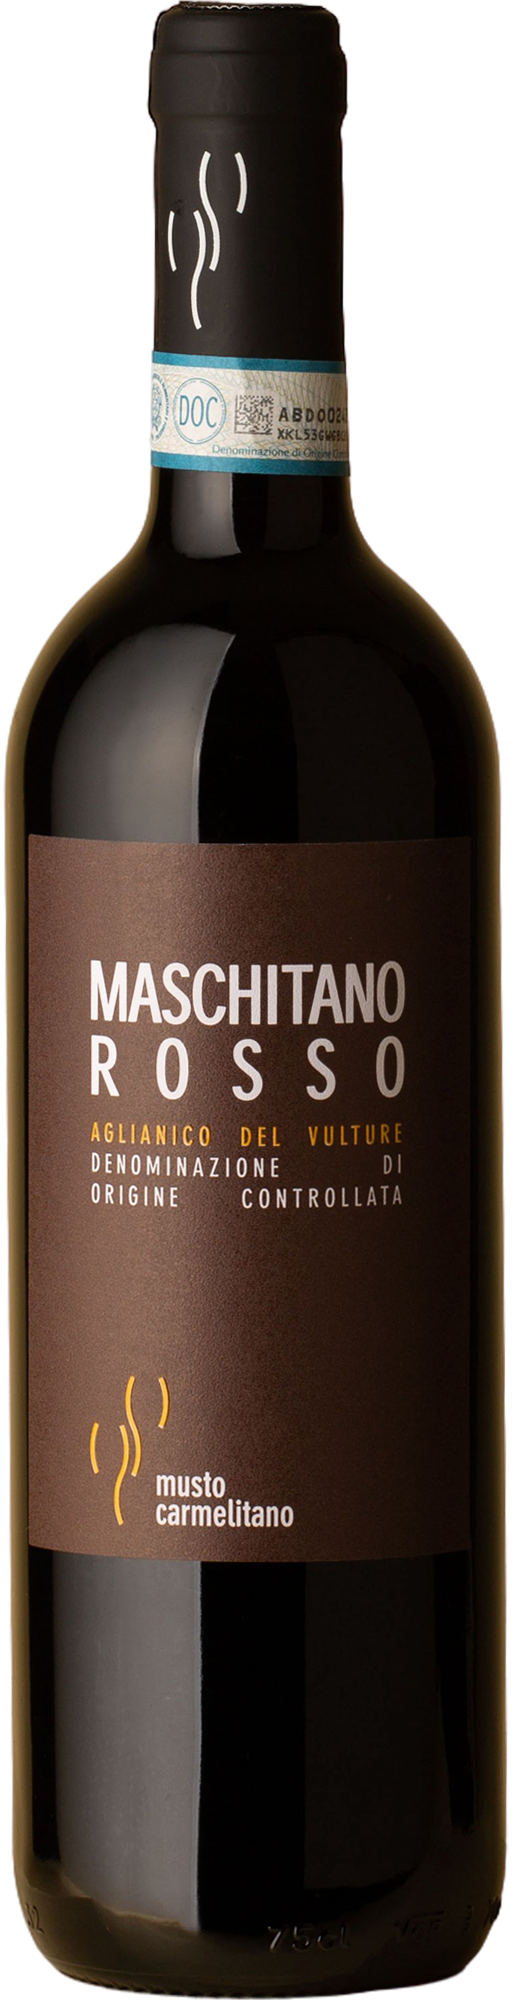 Musto Carmelitano - Maschitano Aglianico del Vulture 2016 Red Wine